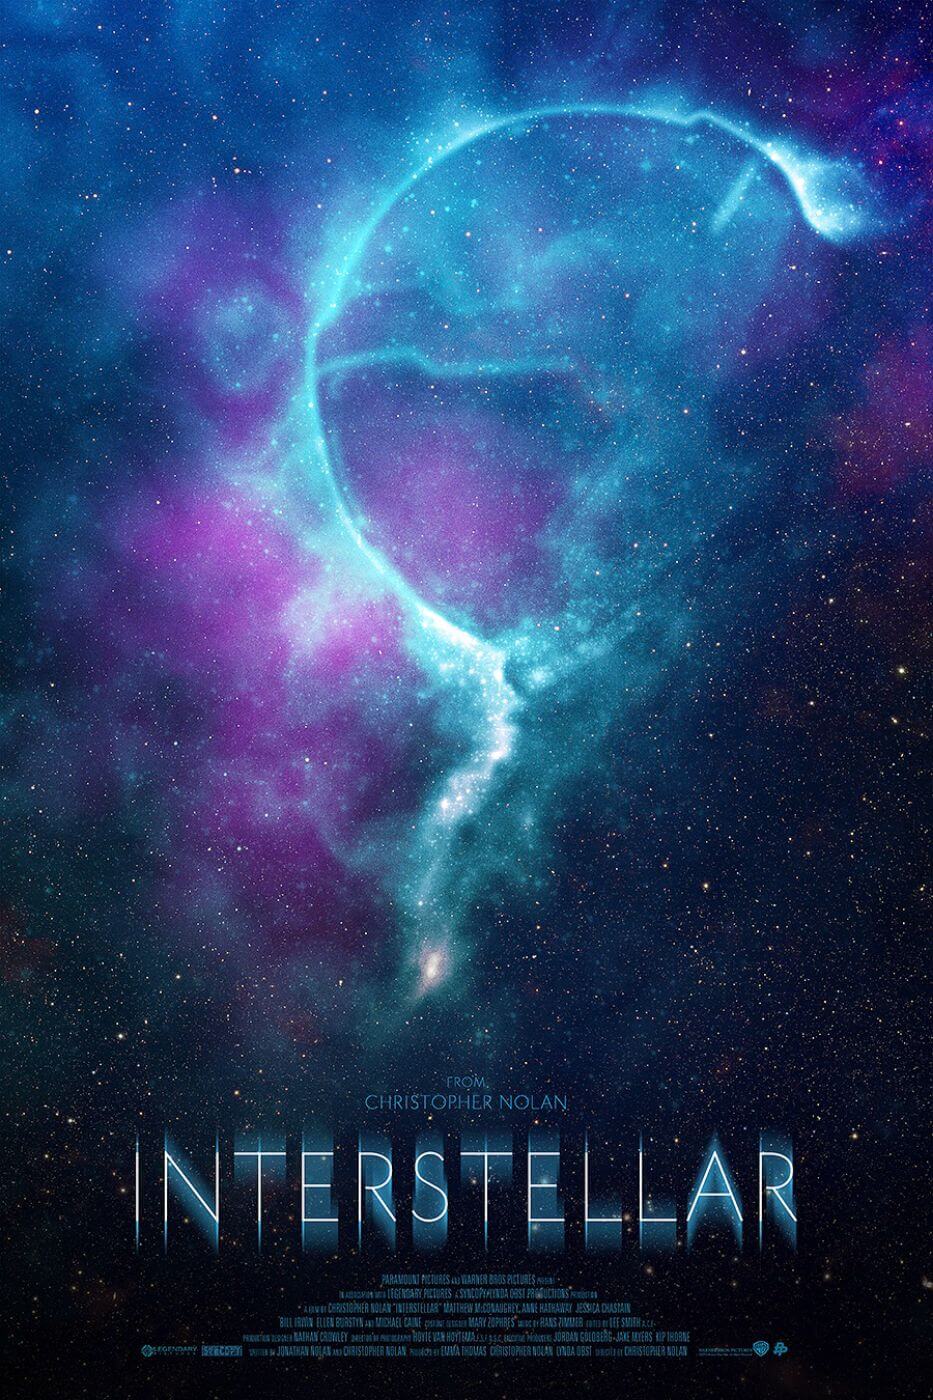 Interstellar - Poster phim khoa học viễn tưởng Hollywood: Đây không chỉ là poster phim khoa học viễn tưởng Hollywood. Đó là một góc nhìn tuyệt đẹp về vũ trụ từ đó chinh phục lòng yêu khoa học của bạn, đưa bạn đến thế giới mới và trải nghiệm cảm giác hồi hộp không ngừng.